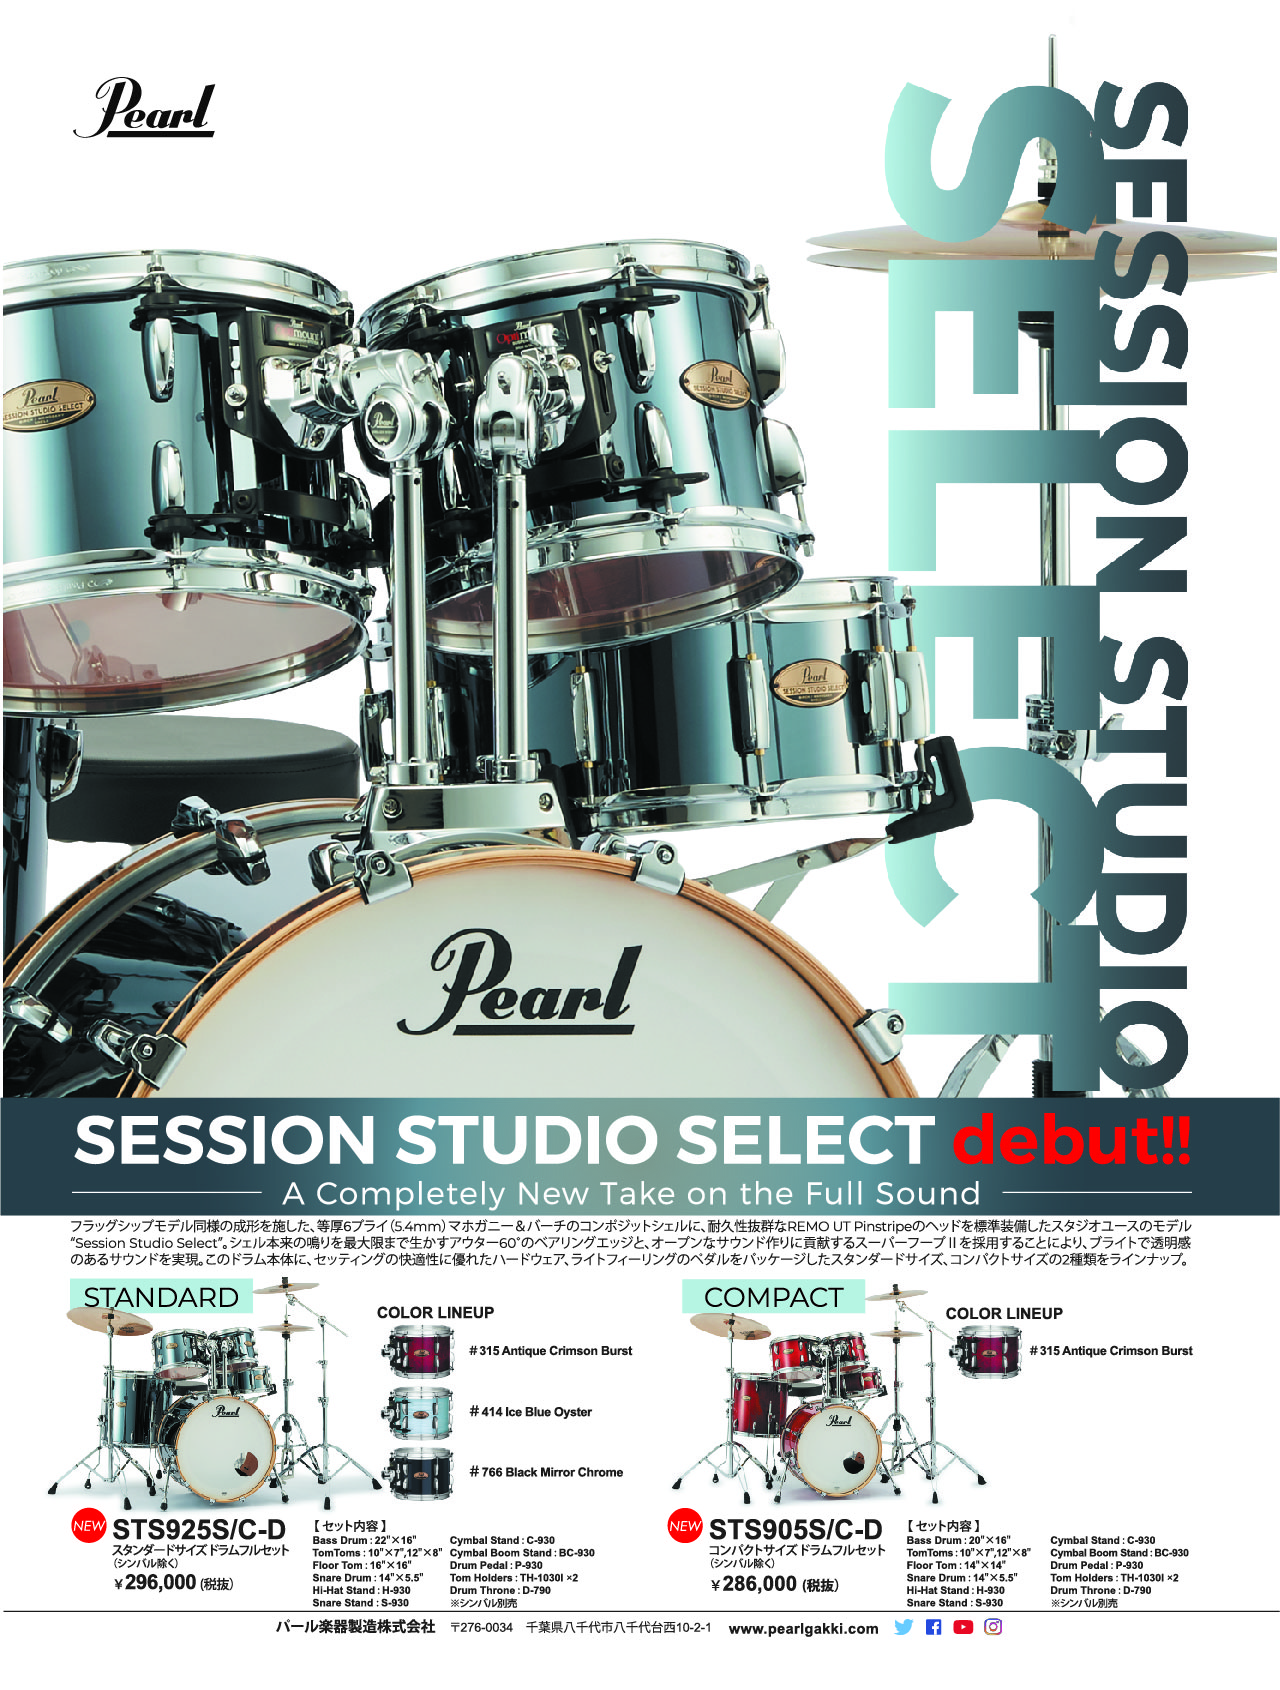 マホガニー×バーチ材を採用したドラムセット”Session Studio Select”新